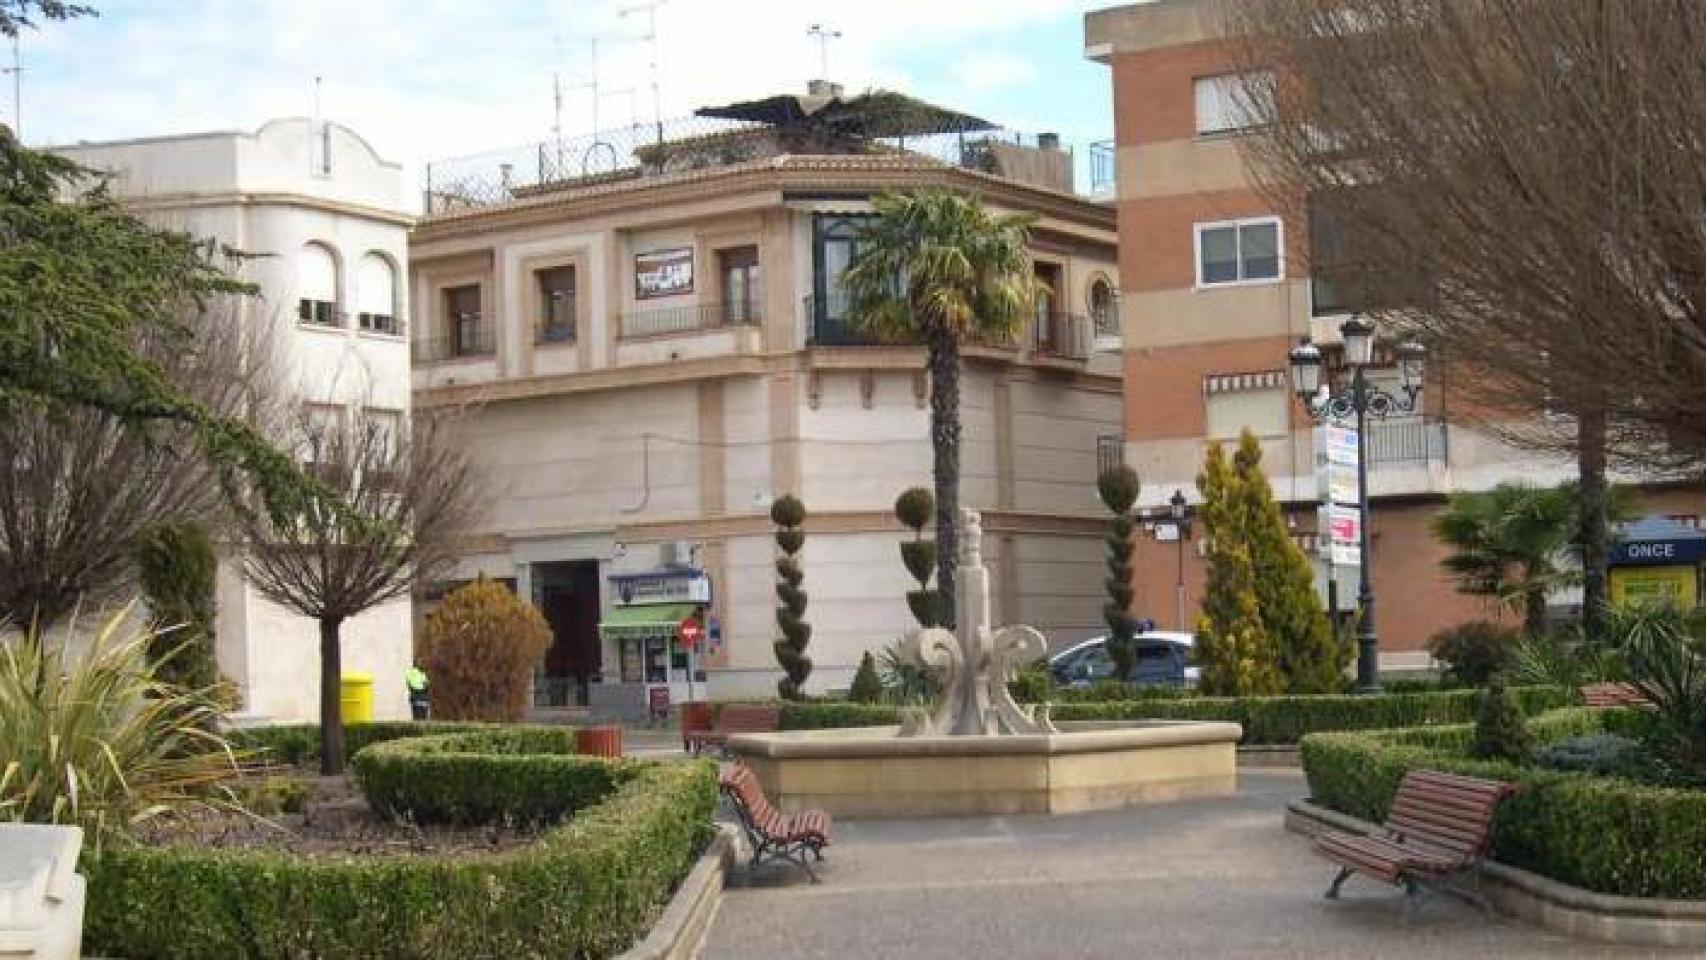 La ONCE deja 2.300.000 euros en Membrilla (Ciudad Real)